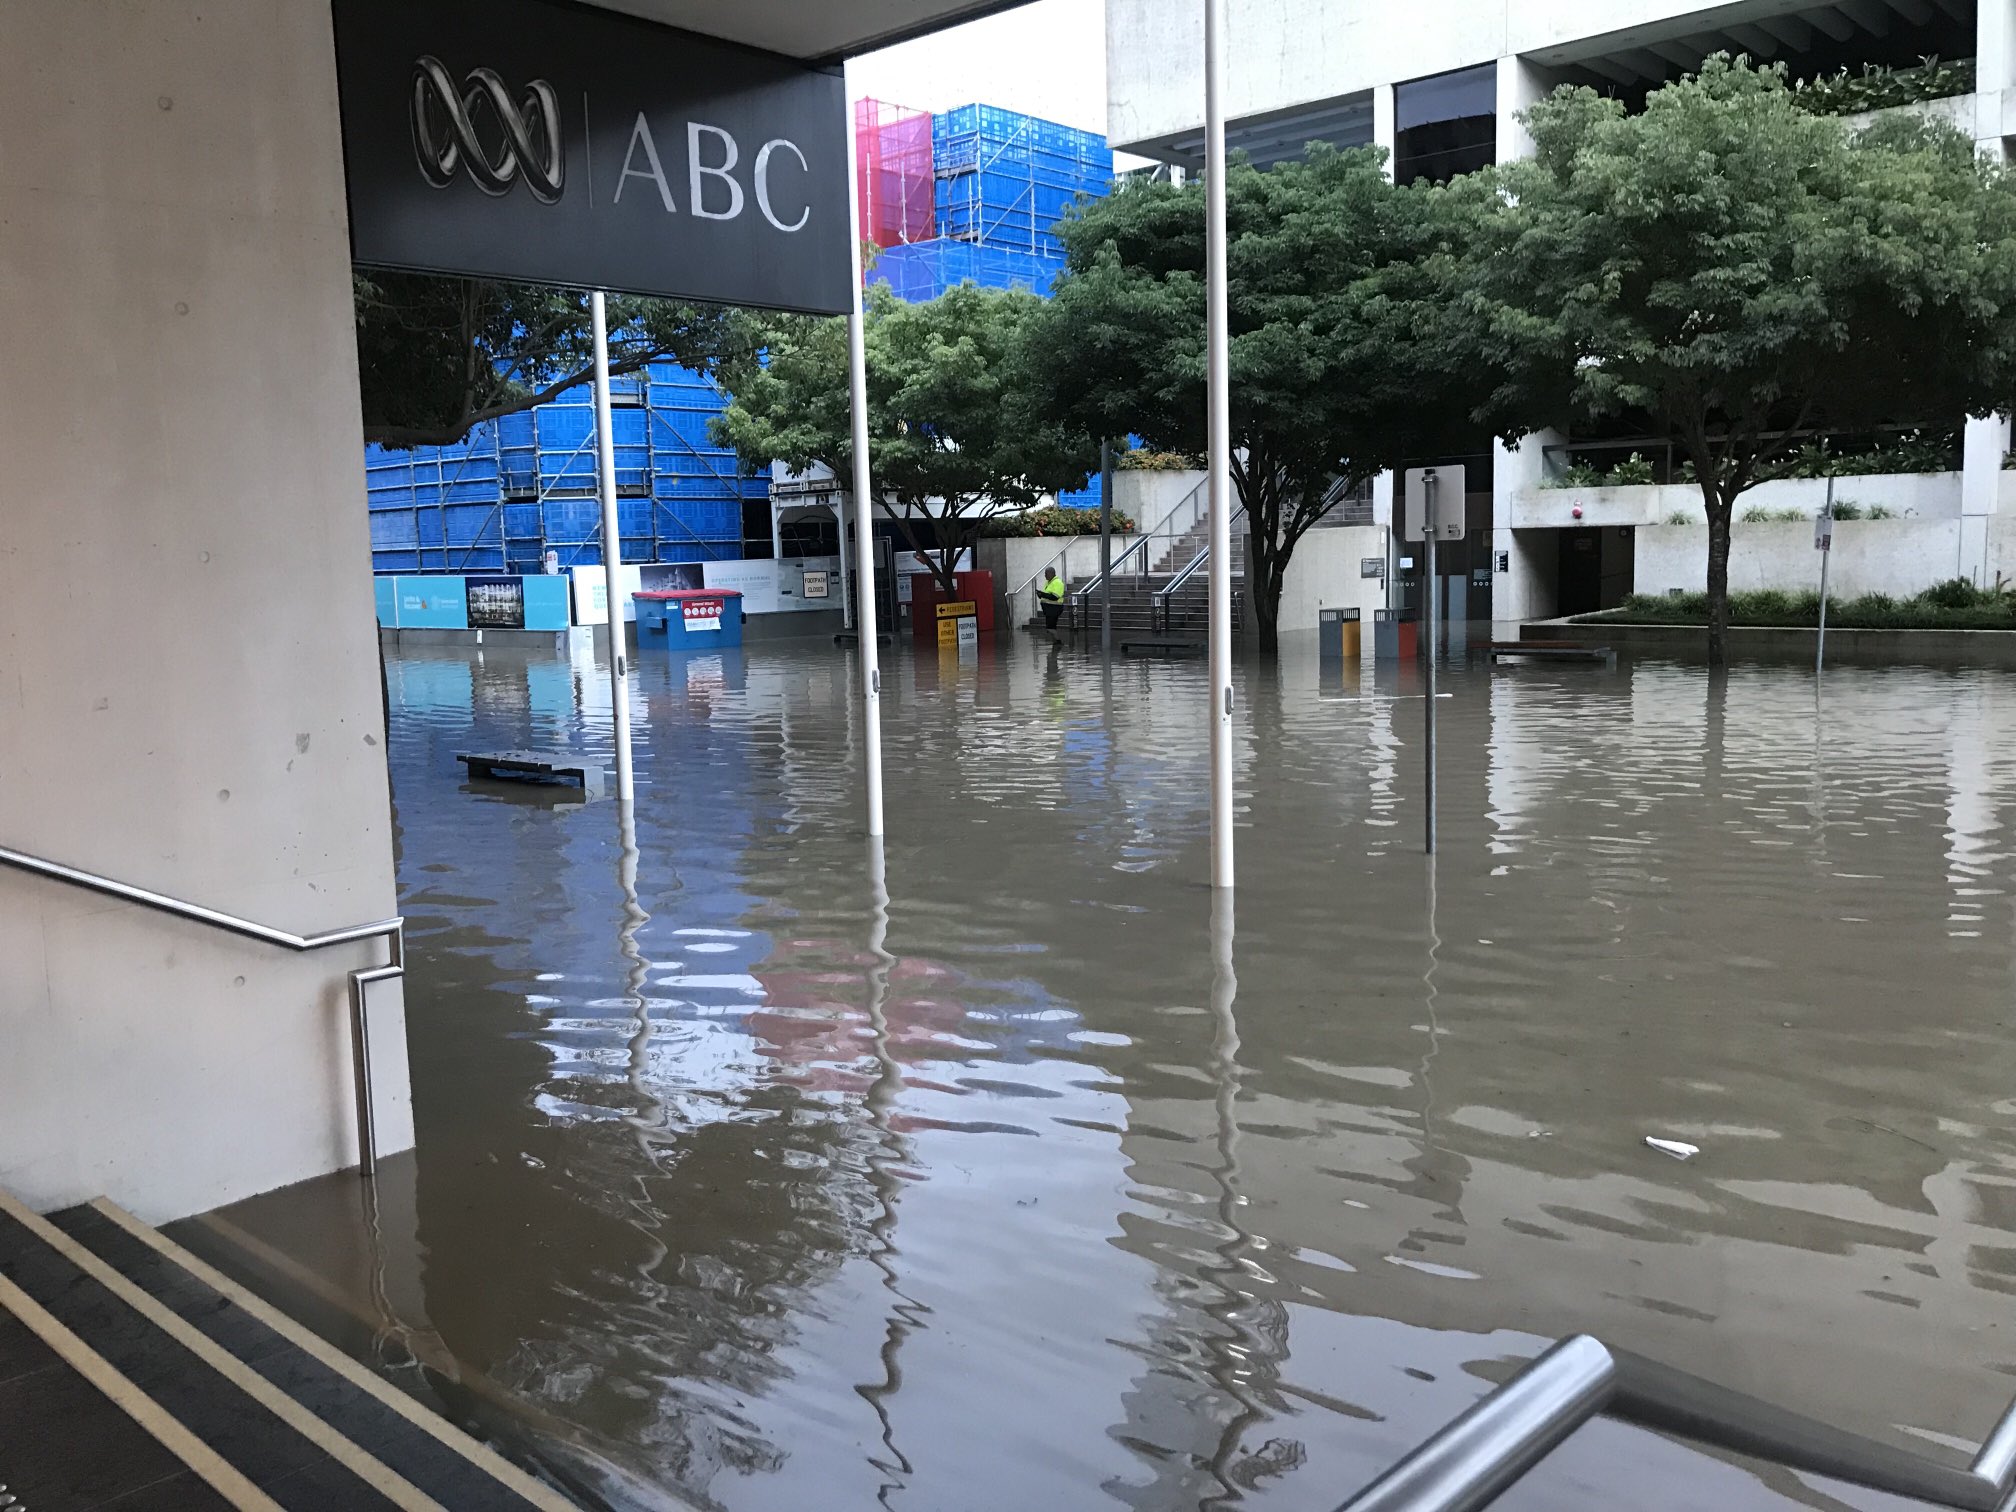 Brisbane ABC evacuated due to flooding